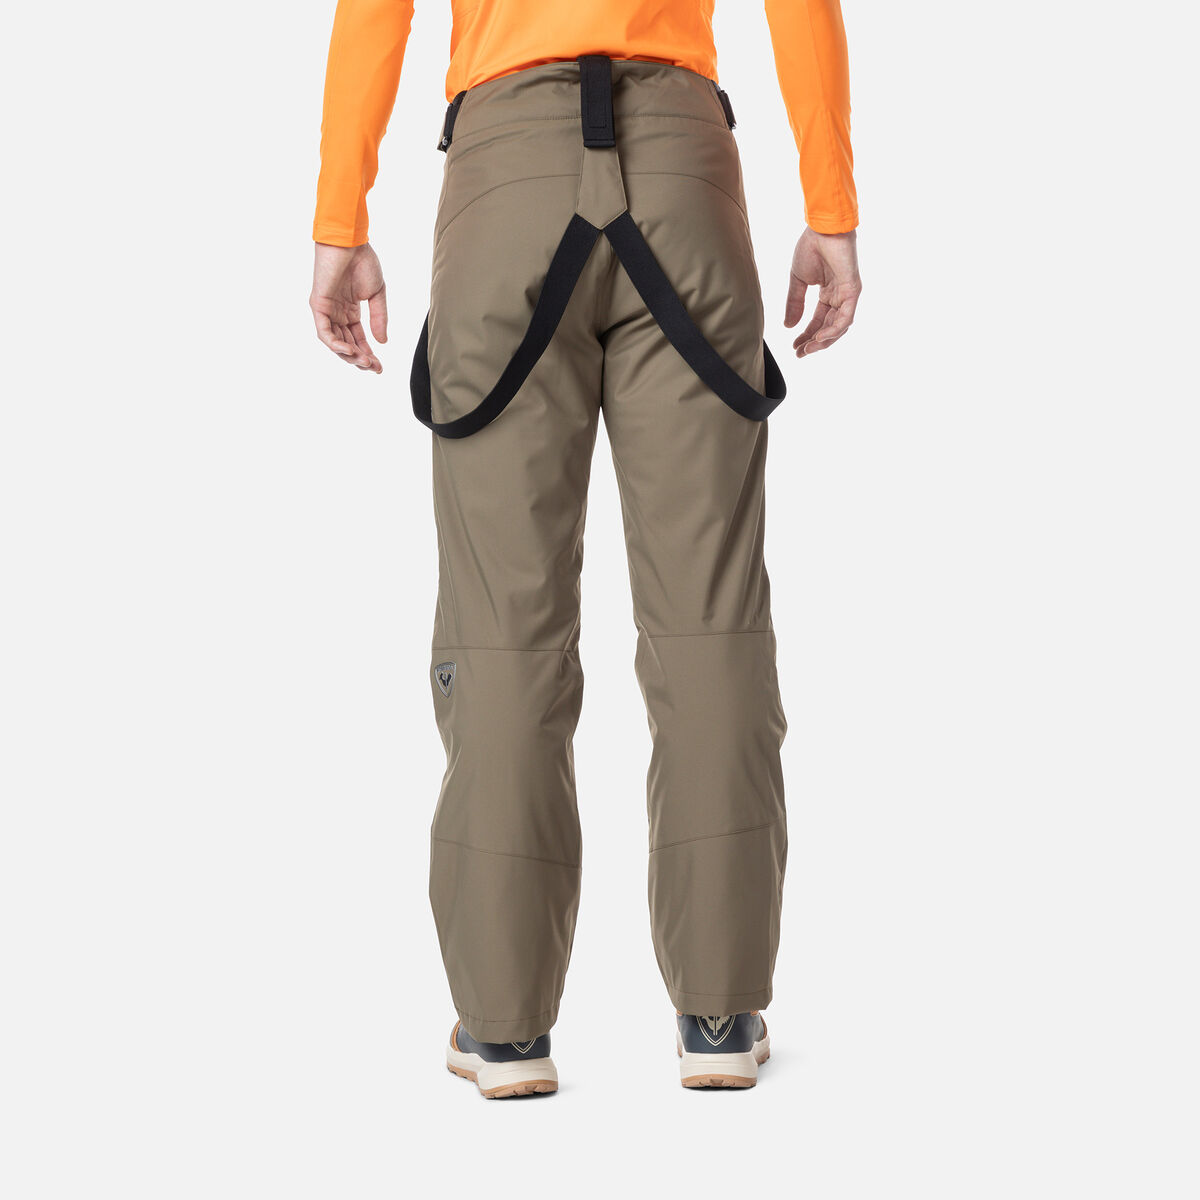 Rossignol Men's Classique Ski Pants, Ski Pants Carmin